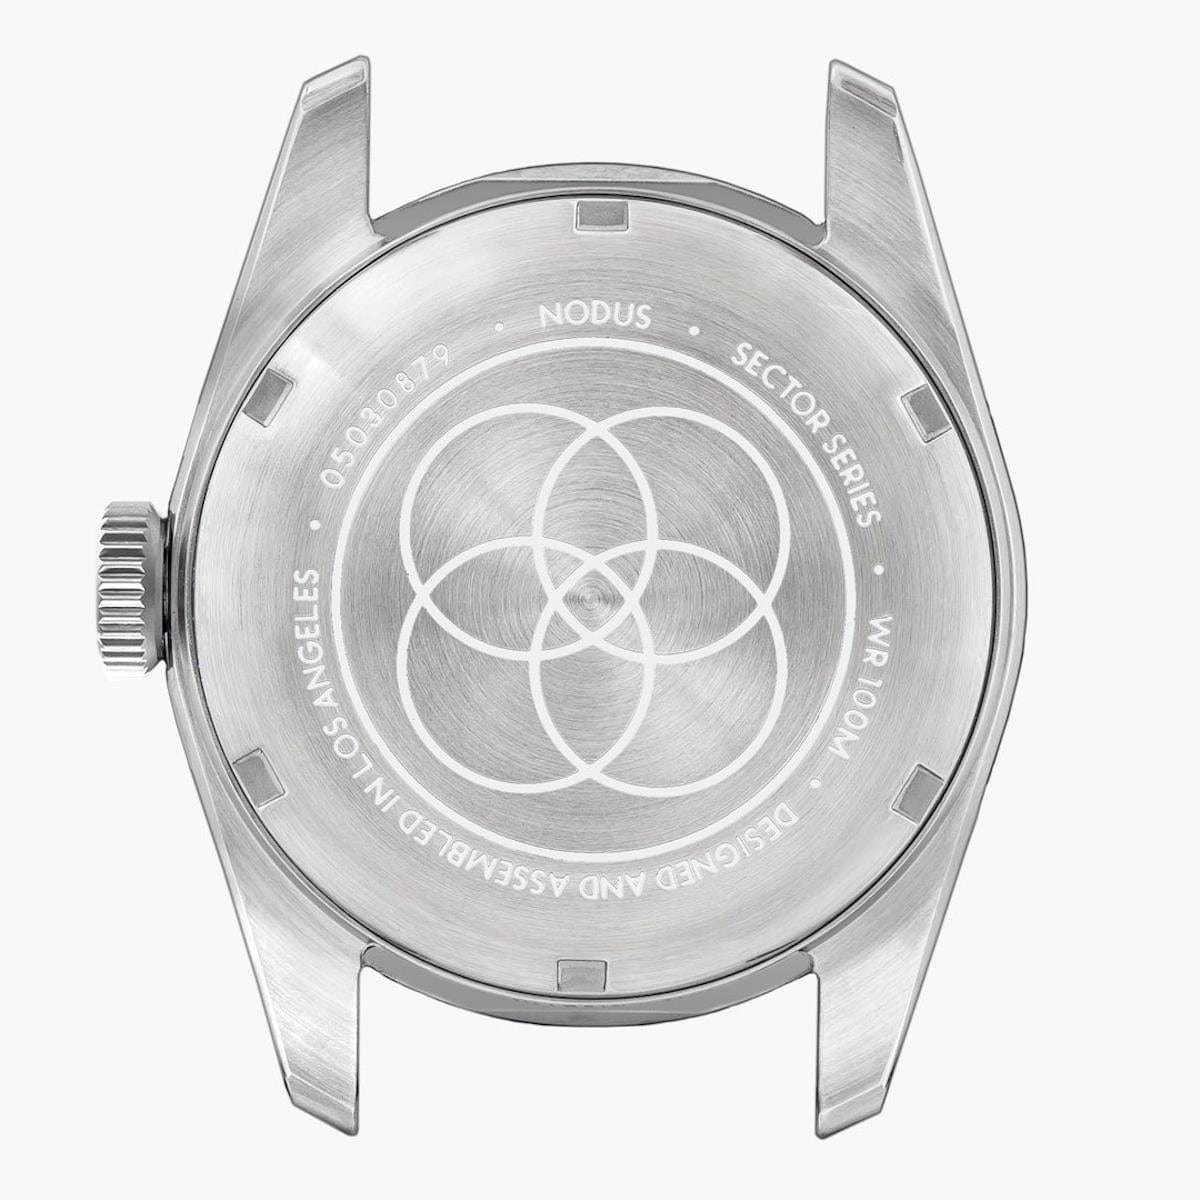 NODUS Sector GMT - Pacific - Pentalink Bracelet